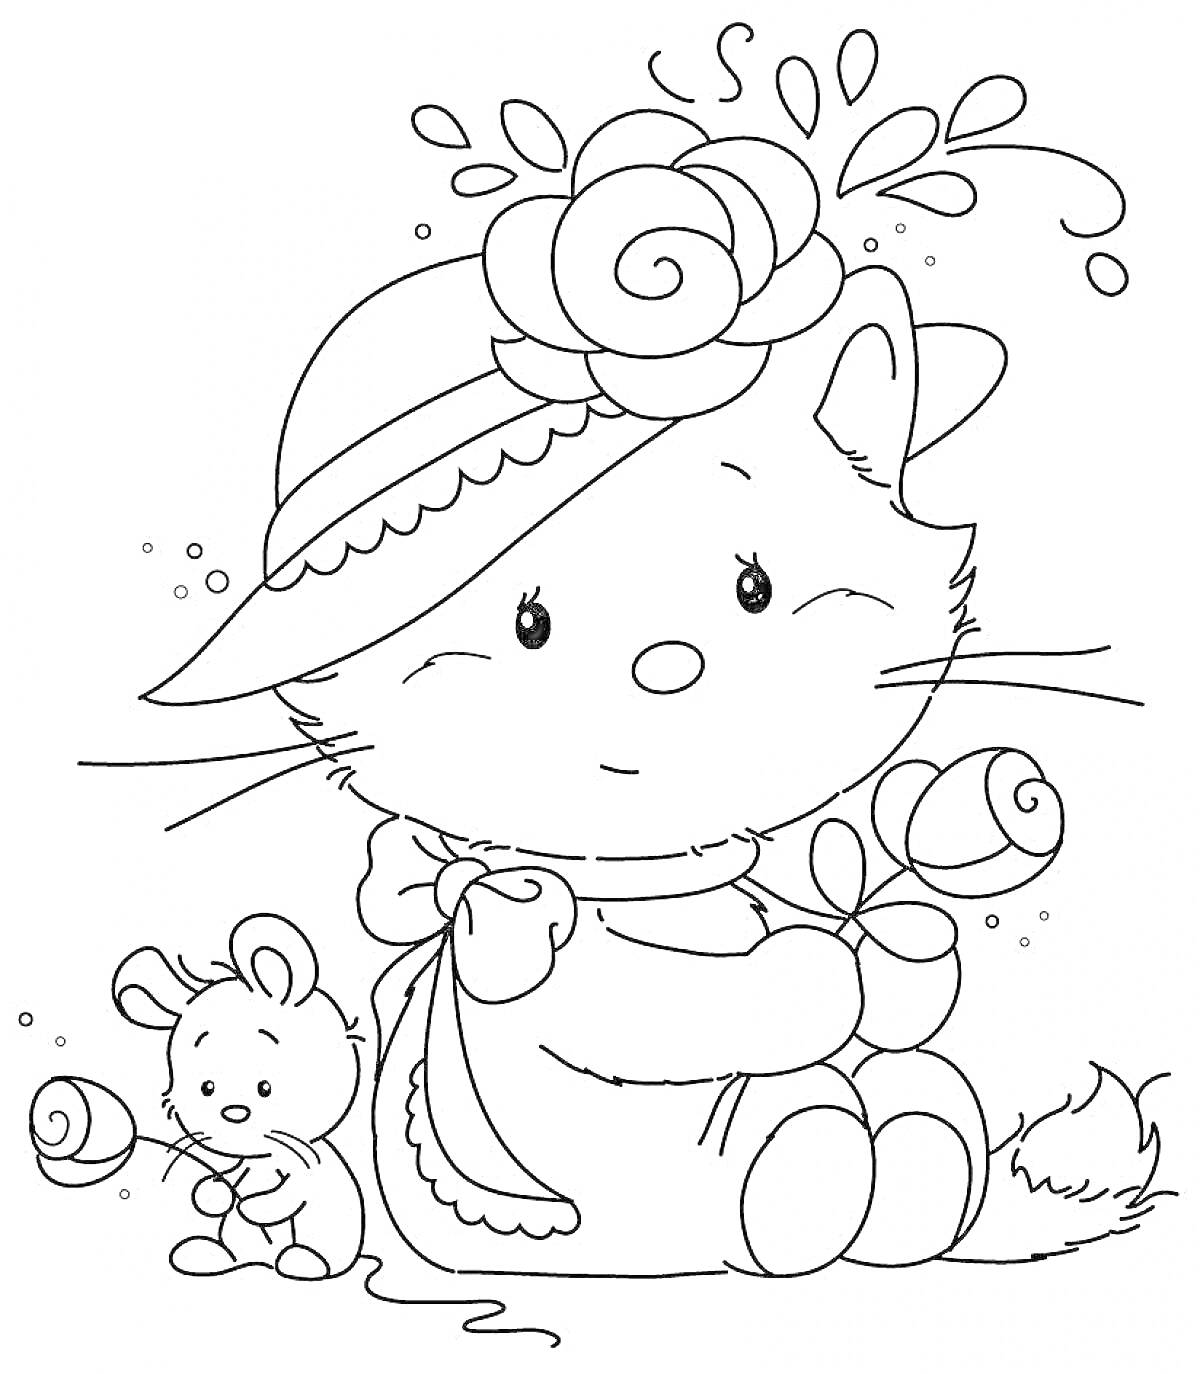 Раскраска котик басик в шляпе с цветком, с мышкой и розами